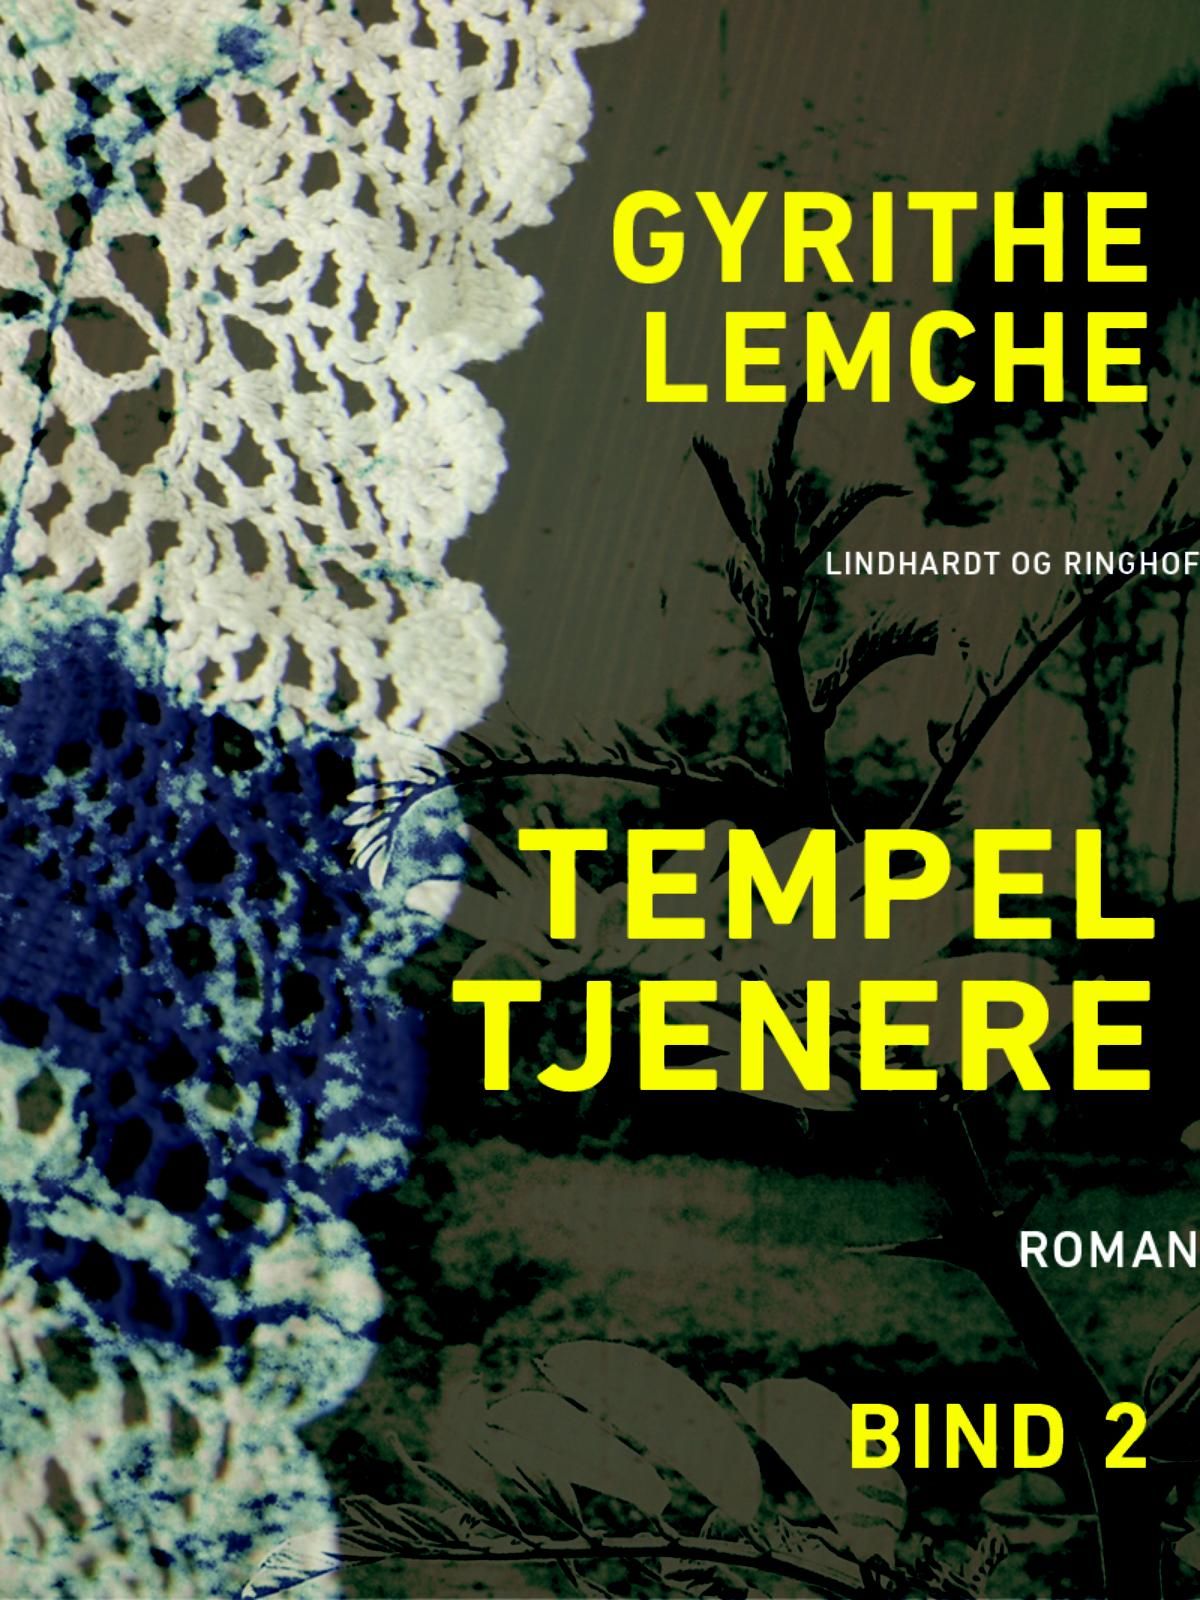 Tempeltjenere (bind 2), e-bog af Gyrithe Lemche